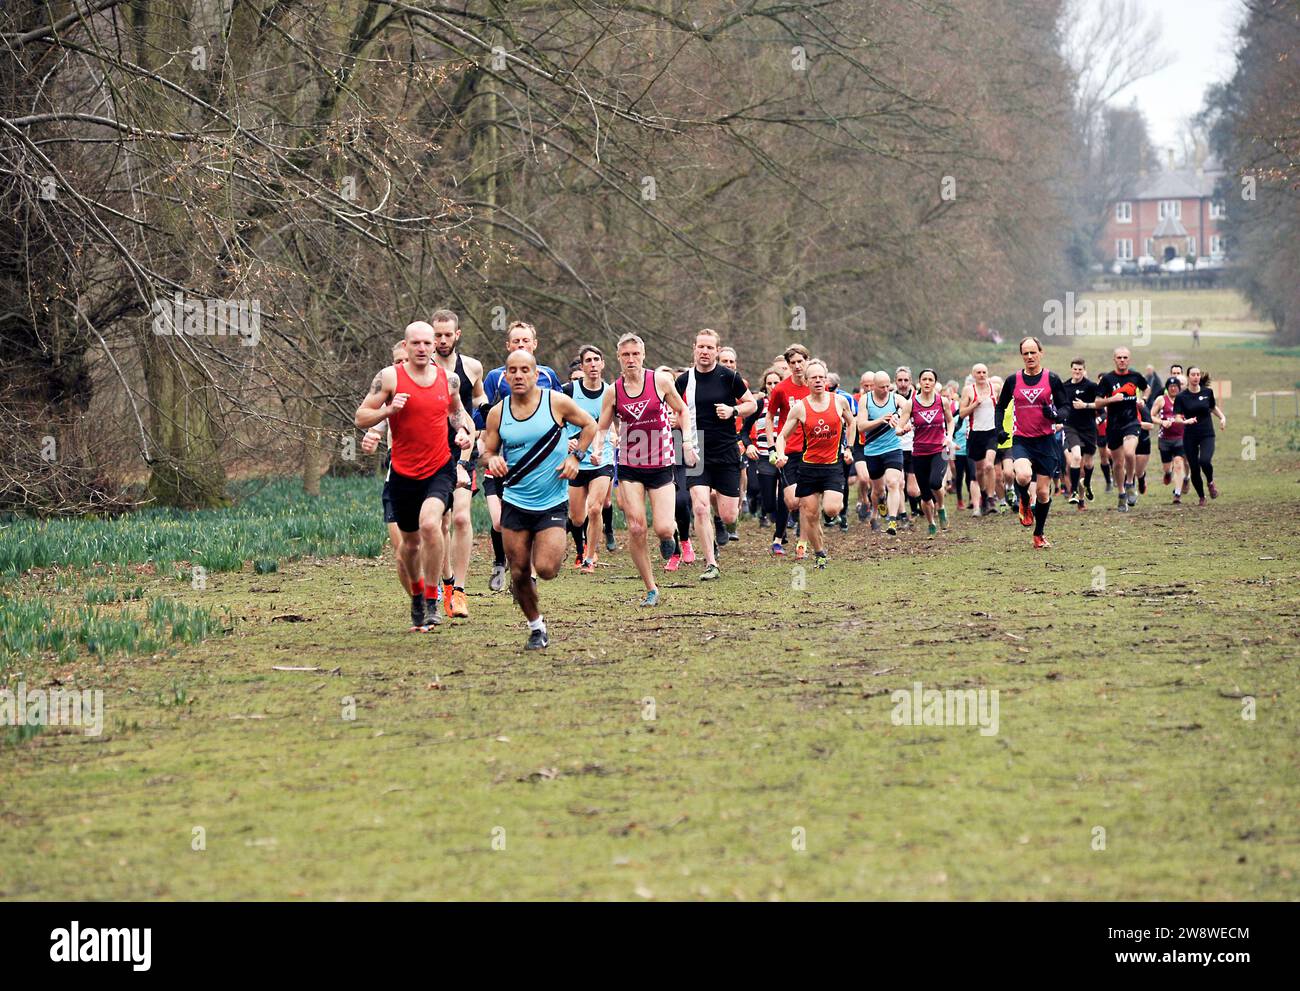 Gruppe von Langstreckenläufern im Nowton Park Bury St edmunds suffolk england Stockfoto